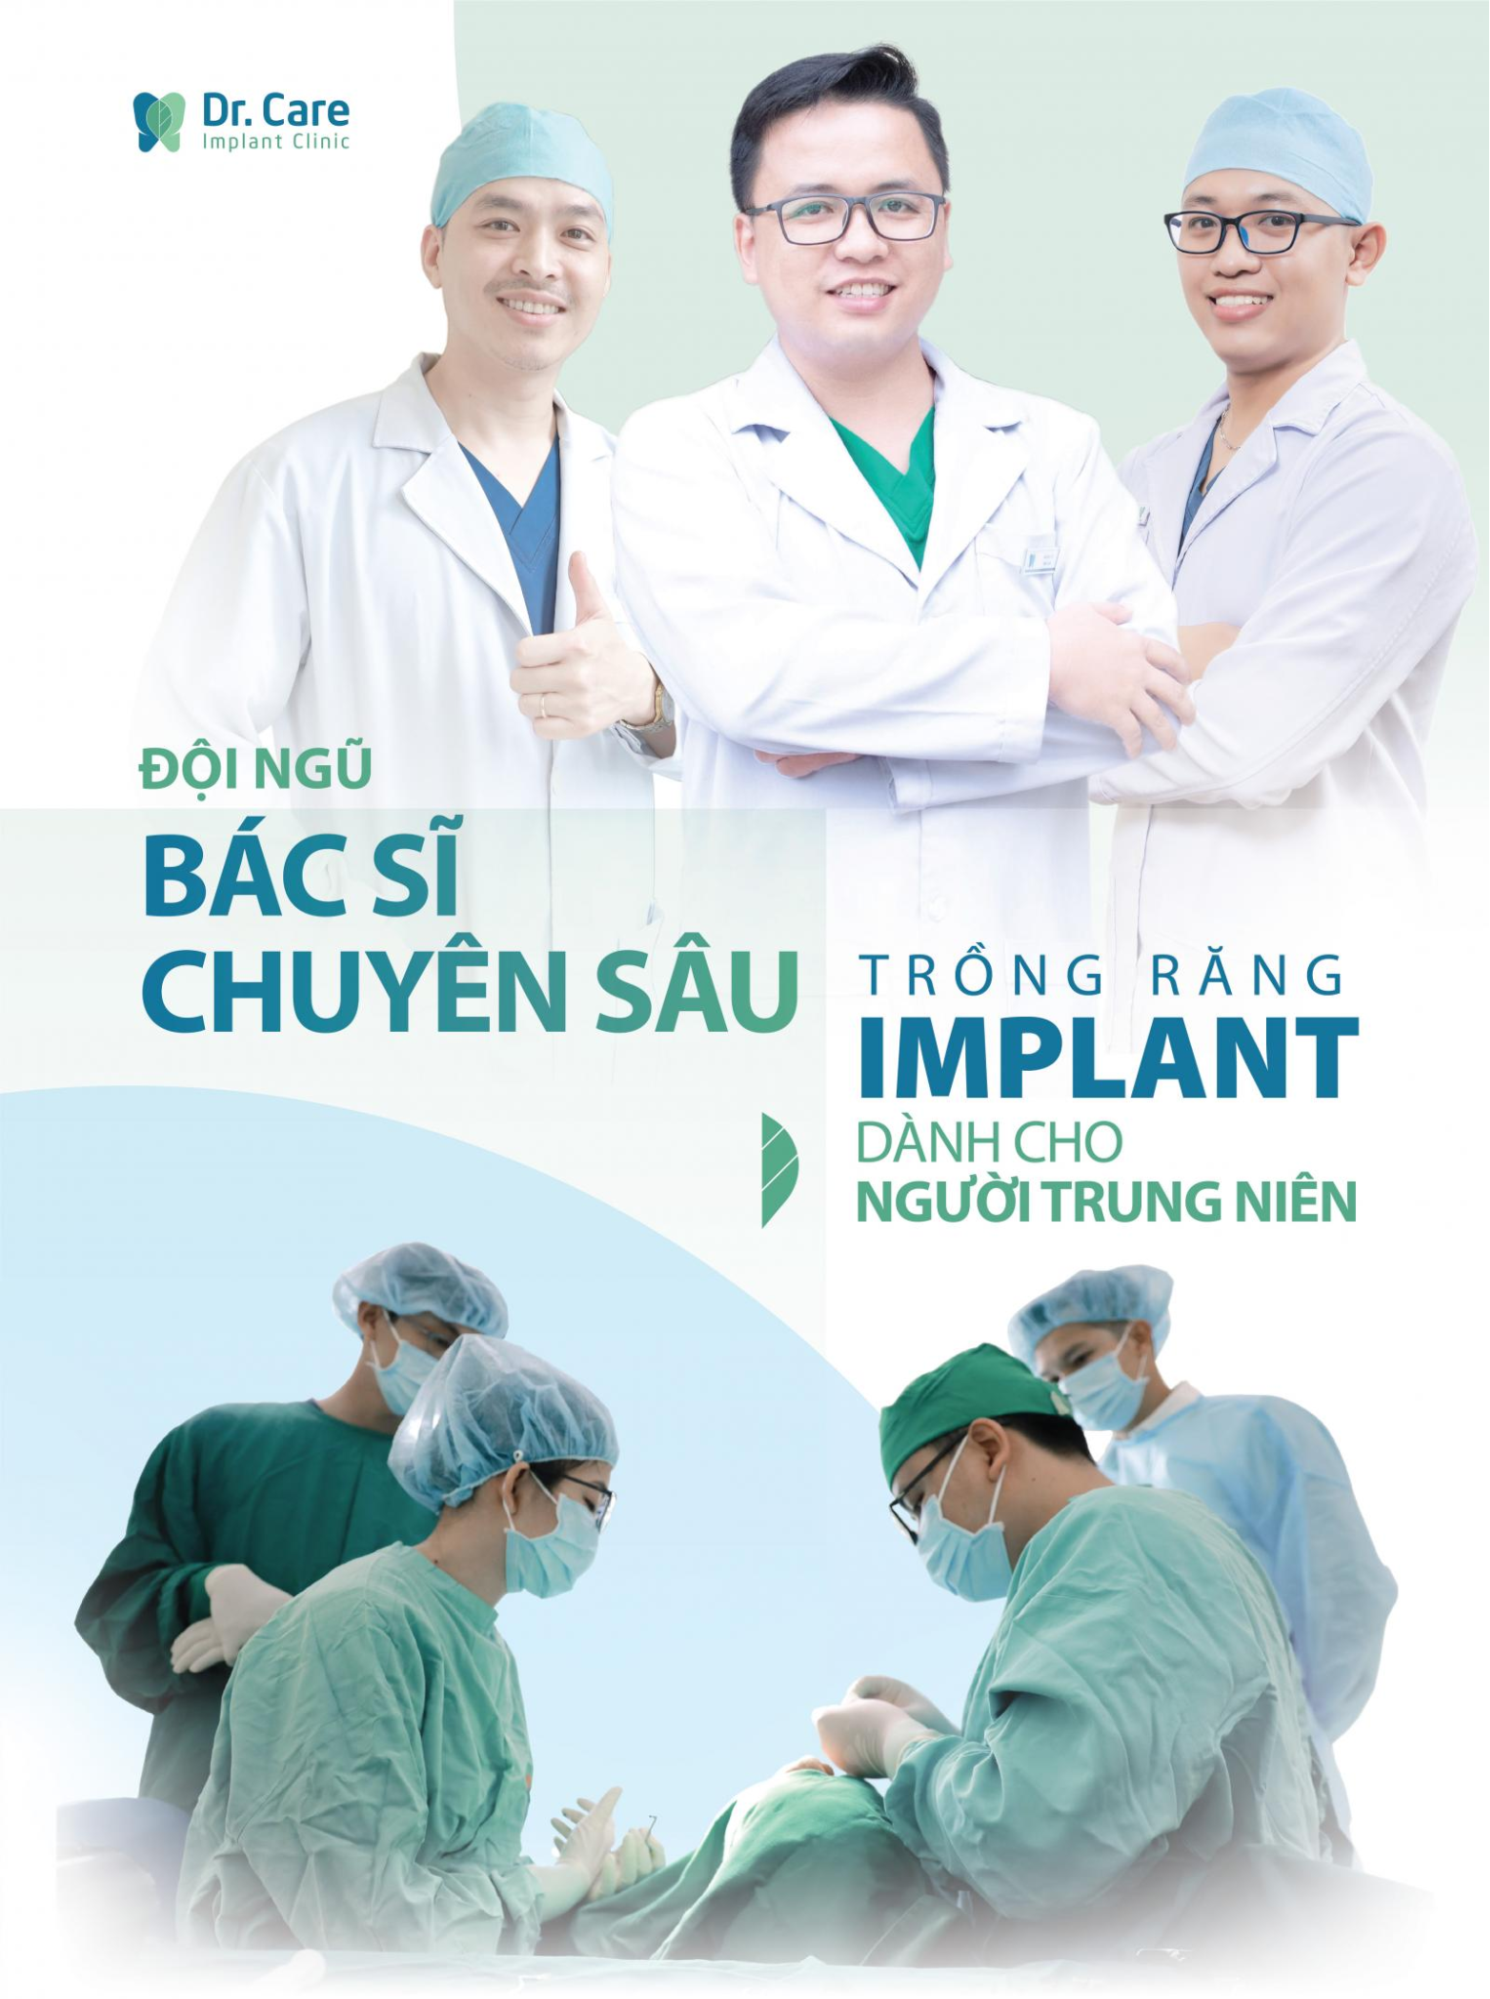 Dr. Care Implant Clinic - Nha khoa uy tín Bình Thạnh